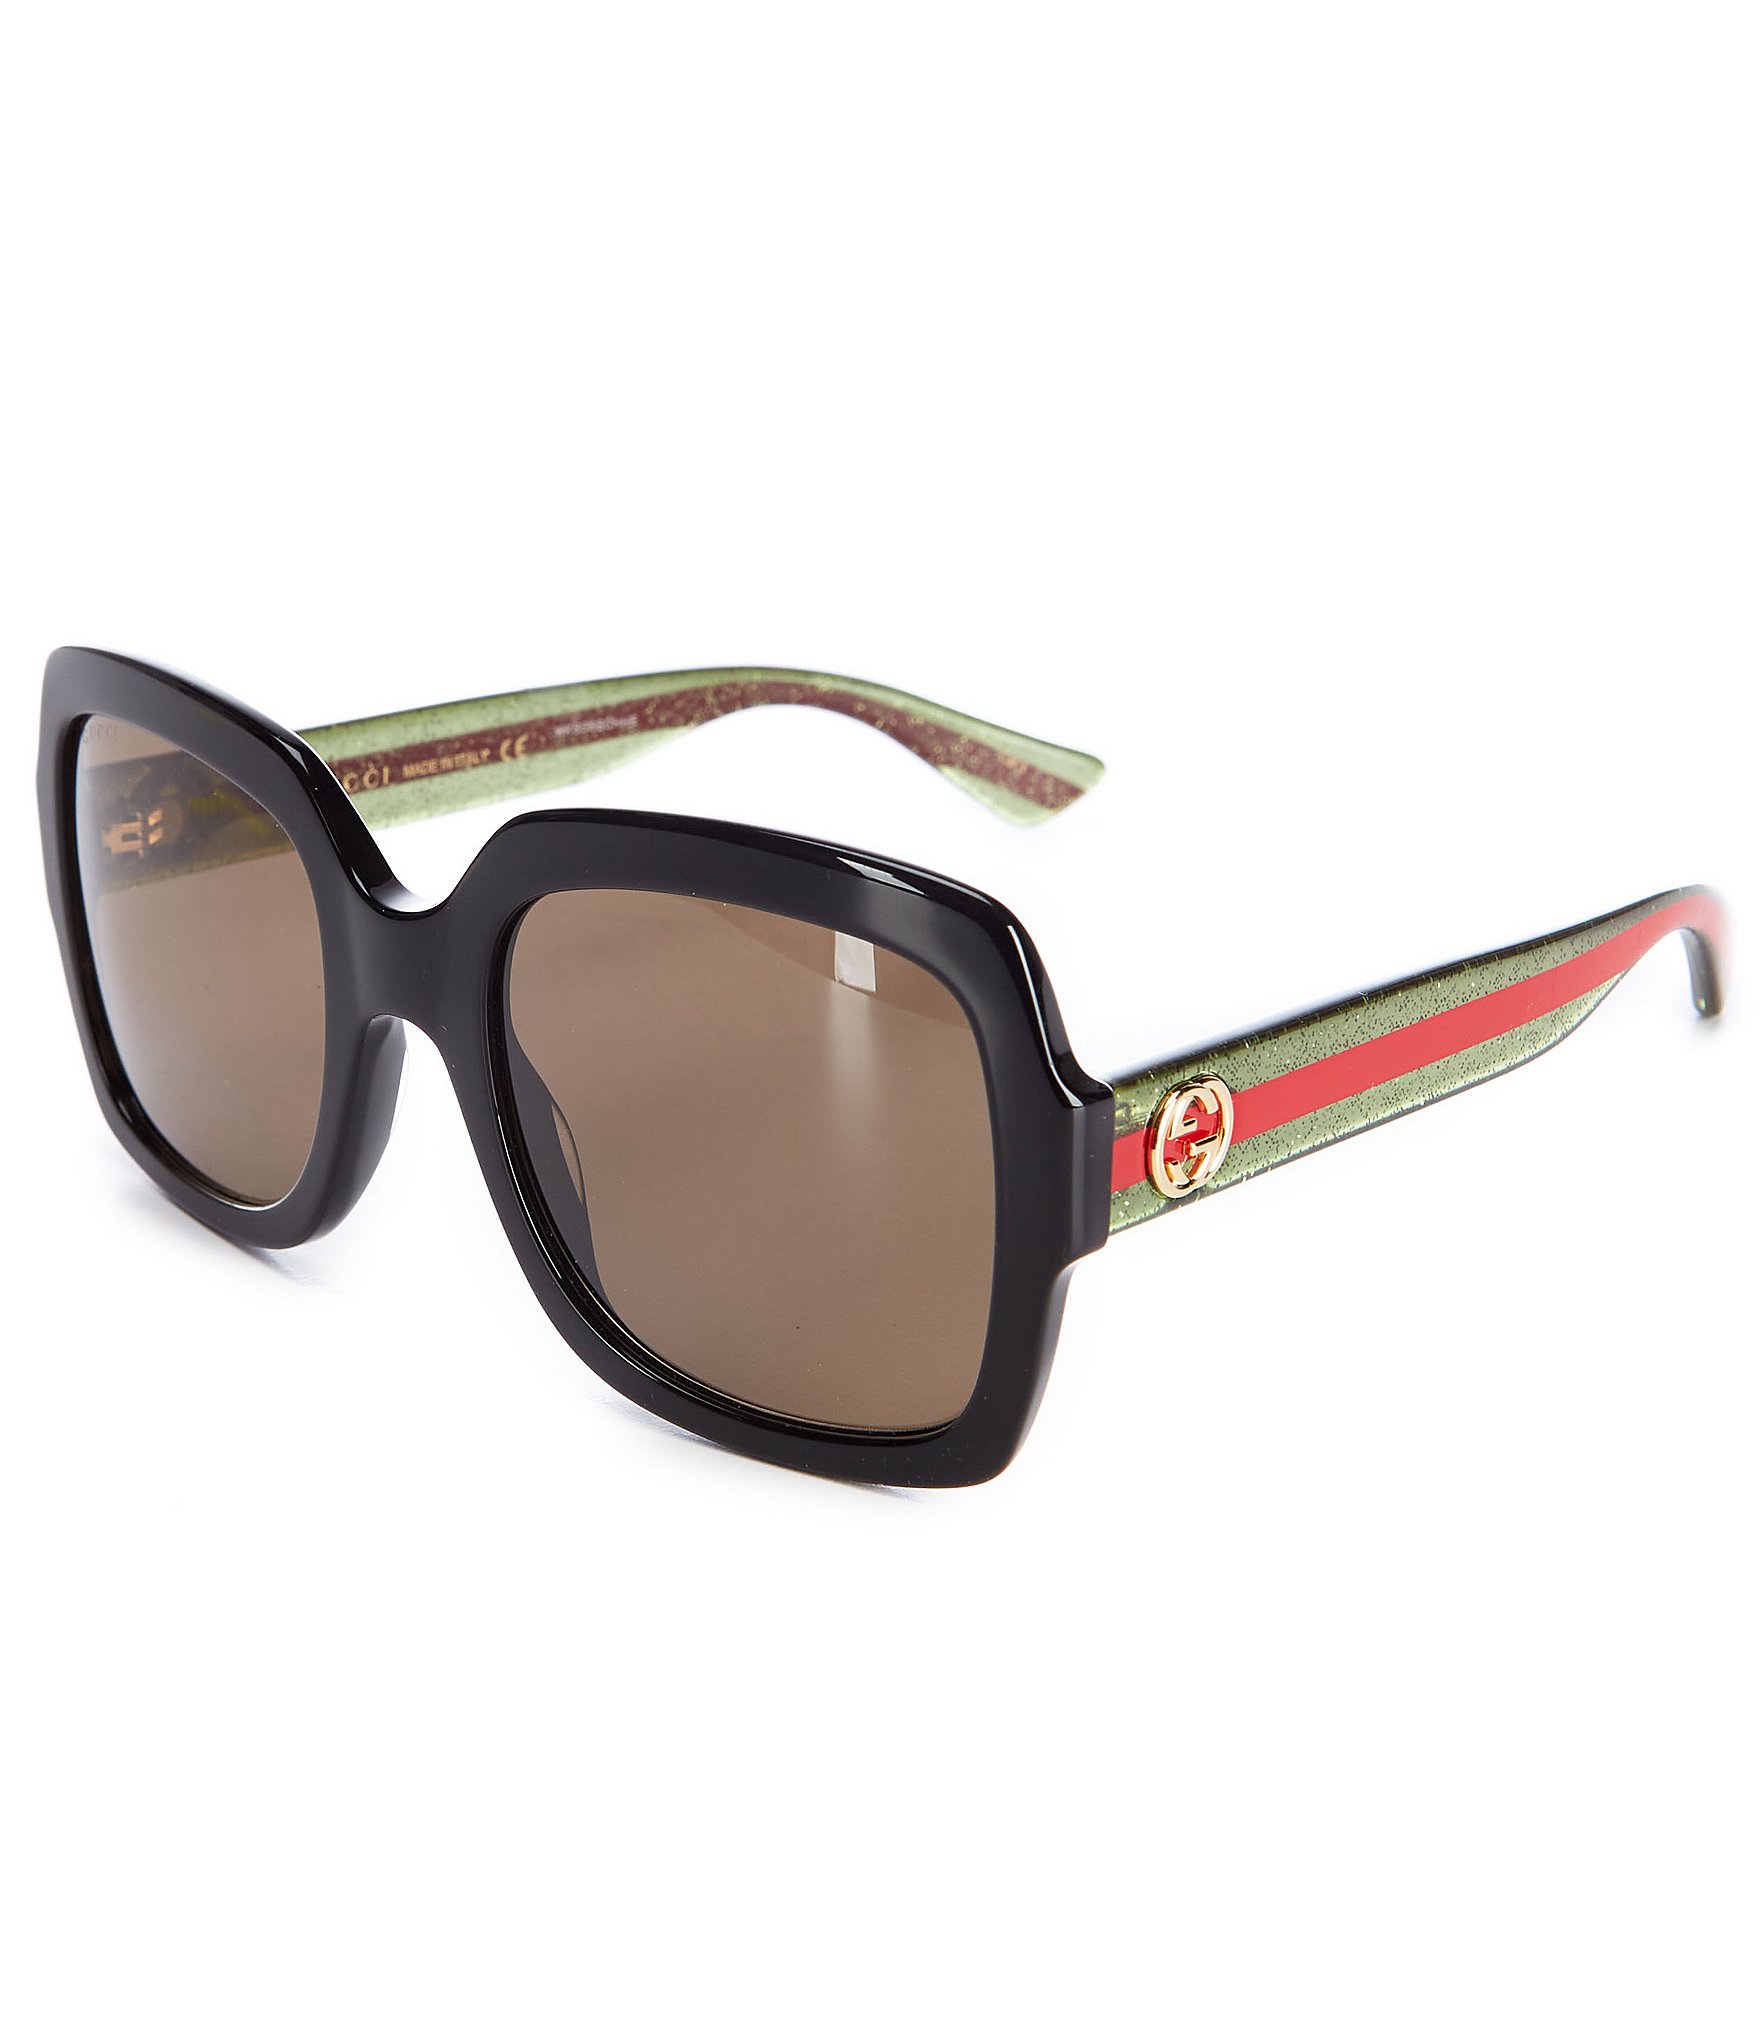 Gucci sunglasses www.questoilgroup.com